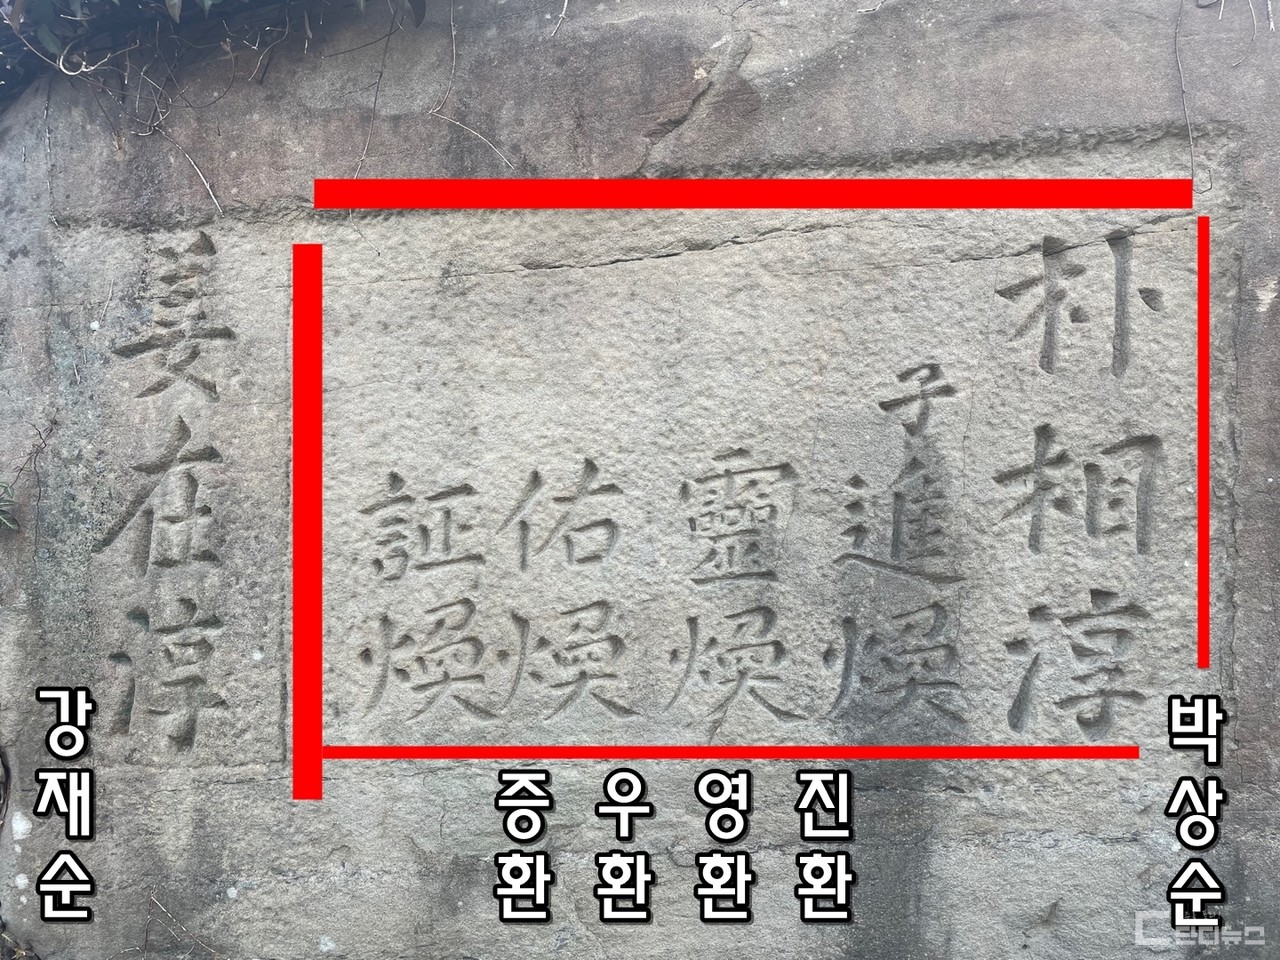 벽면 오른쪽에 박진환 선생 일가와 강재순 선생의 이름이 음각돼 있다.